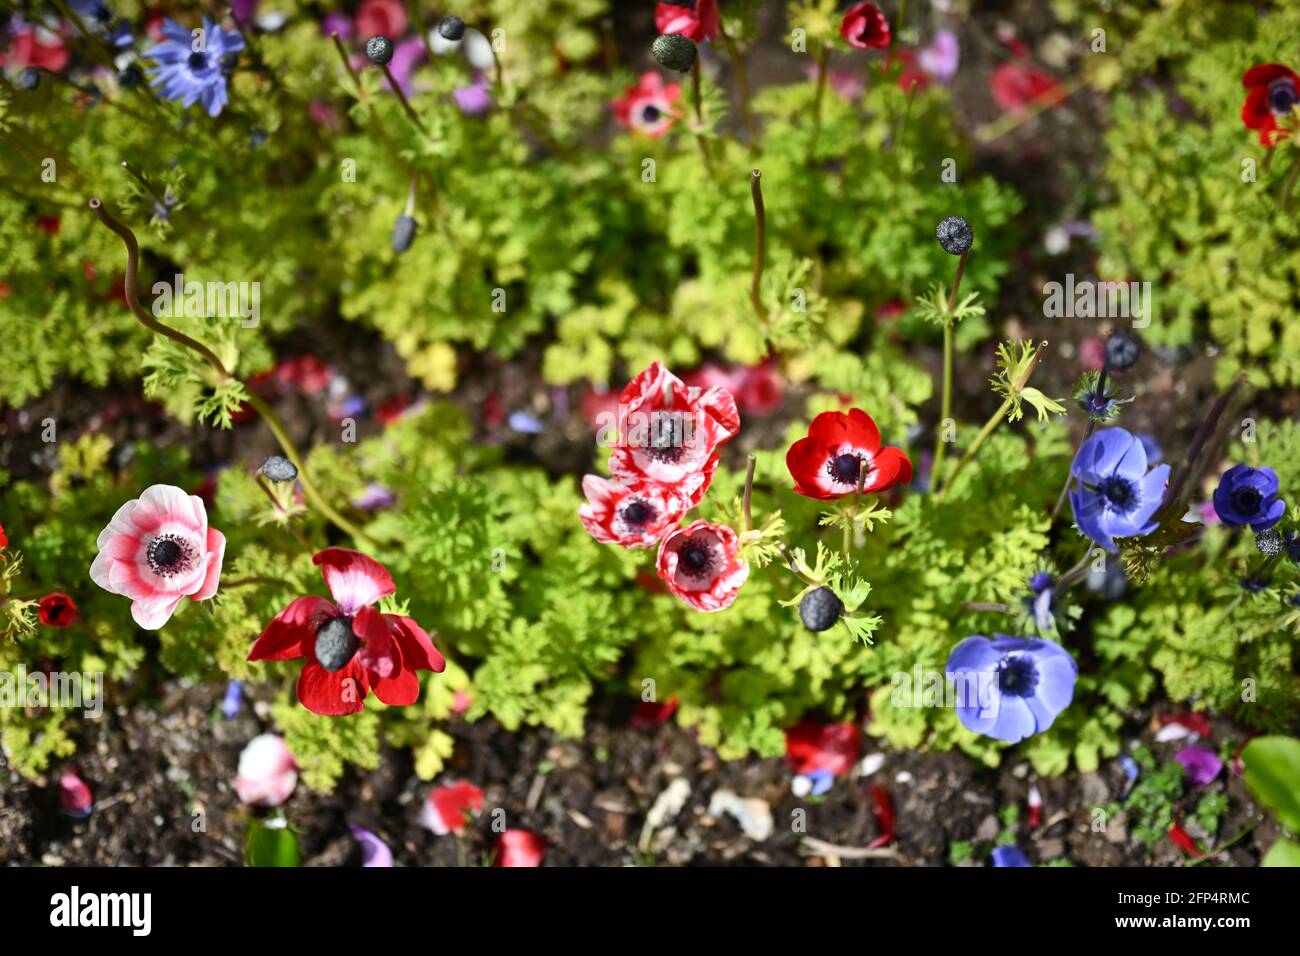 Wunderschöne bunte Blumen, Blumenhintergrund Foto Stockfoto